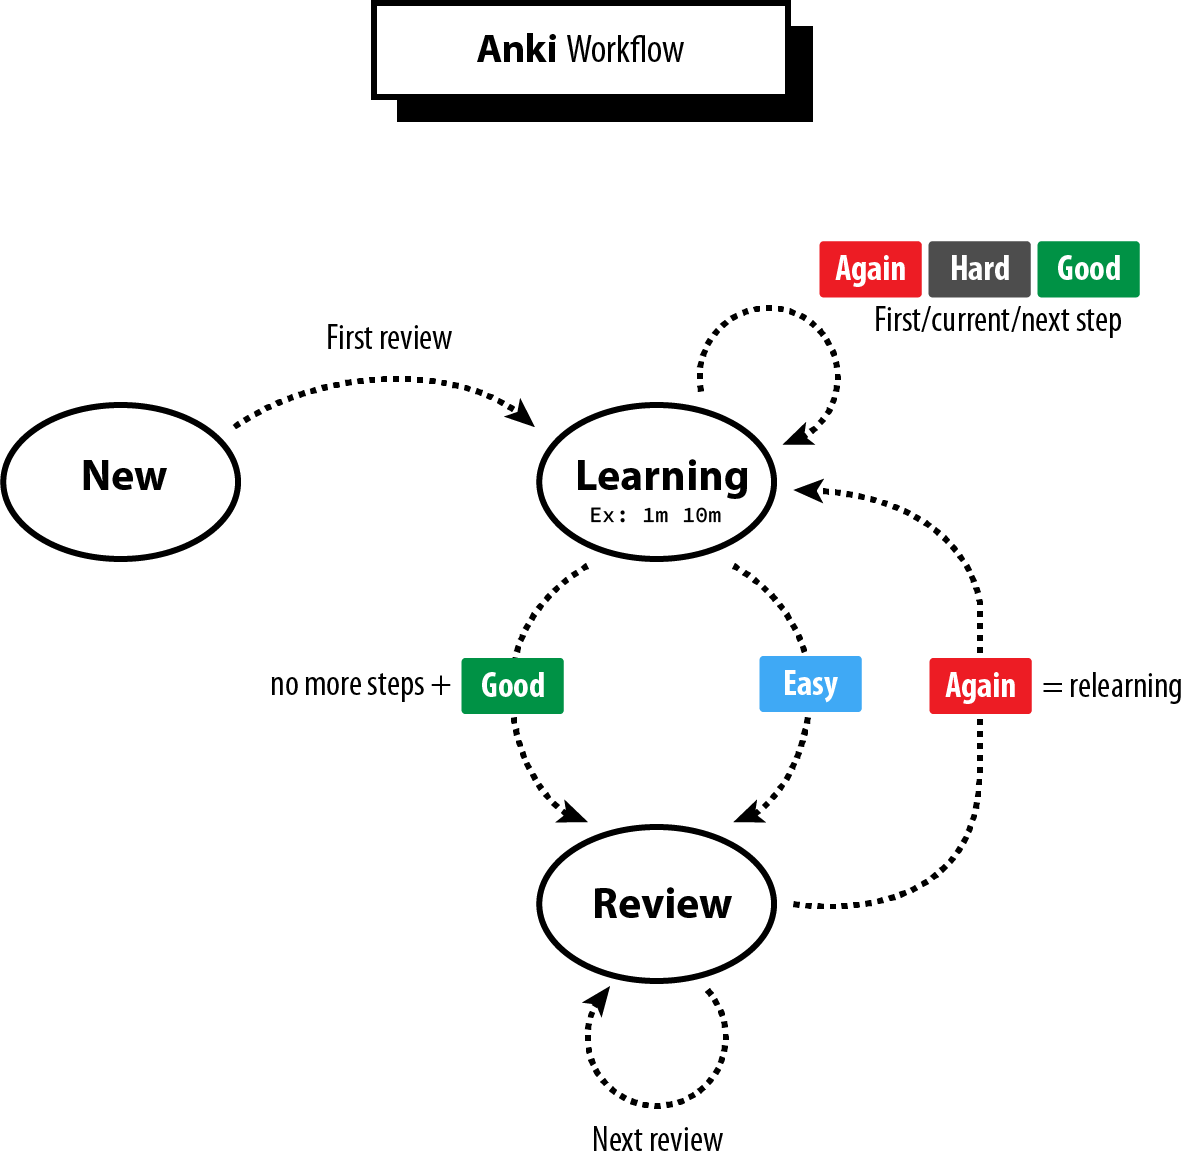 anki workflow